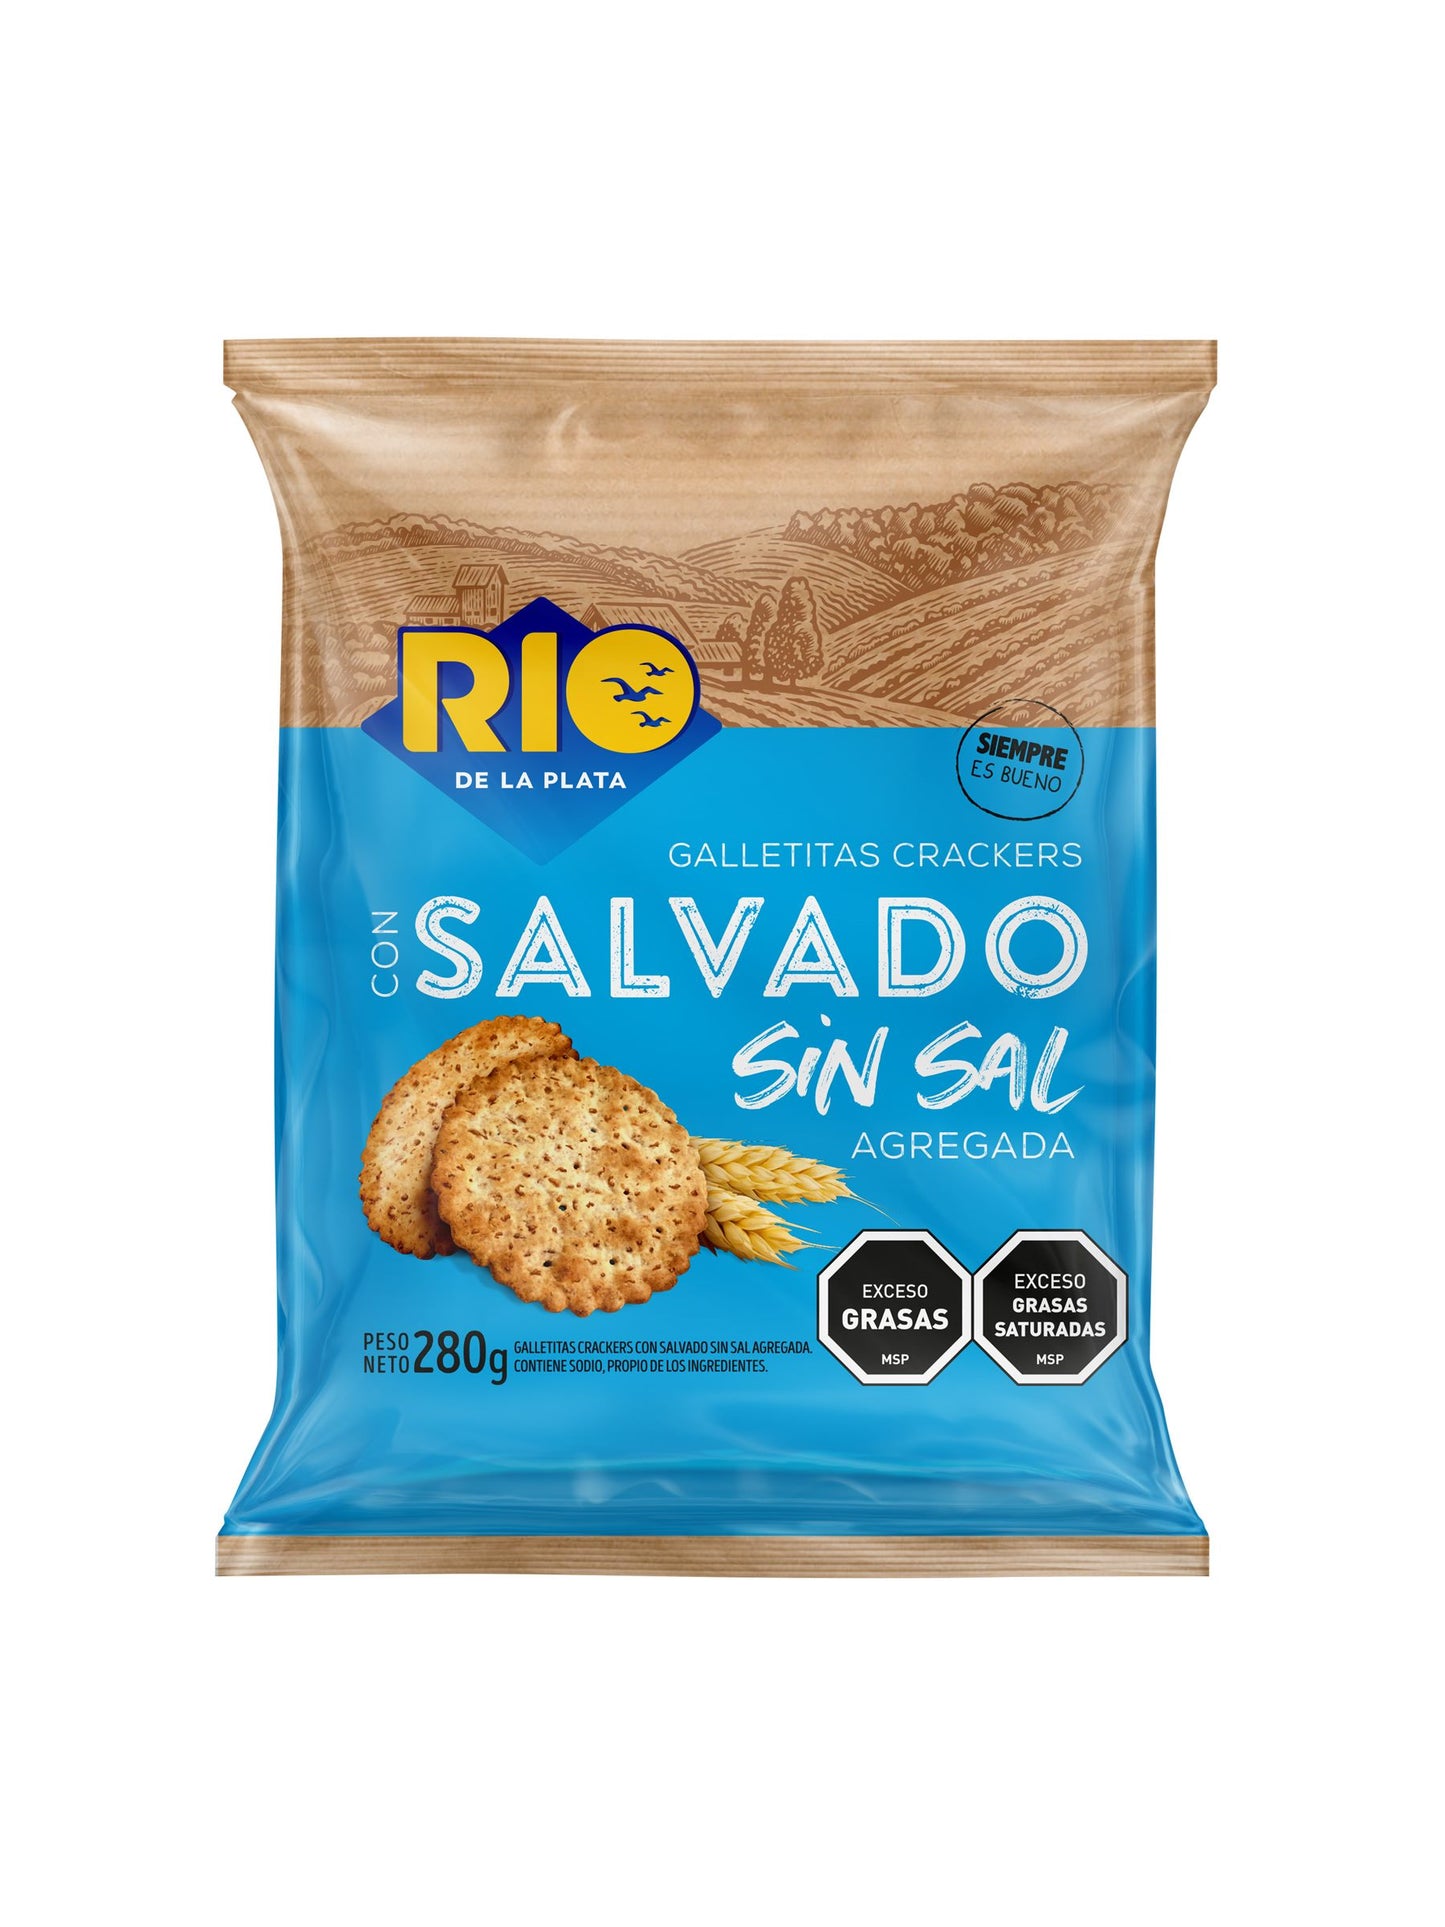 Galletitas Crackers Salvado sin sal 280Grs. Rio de la Plata